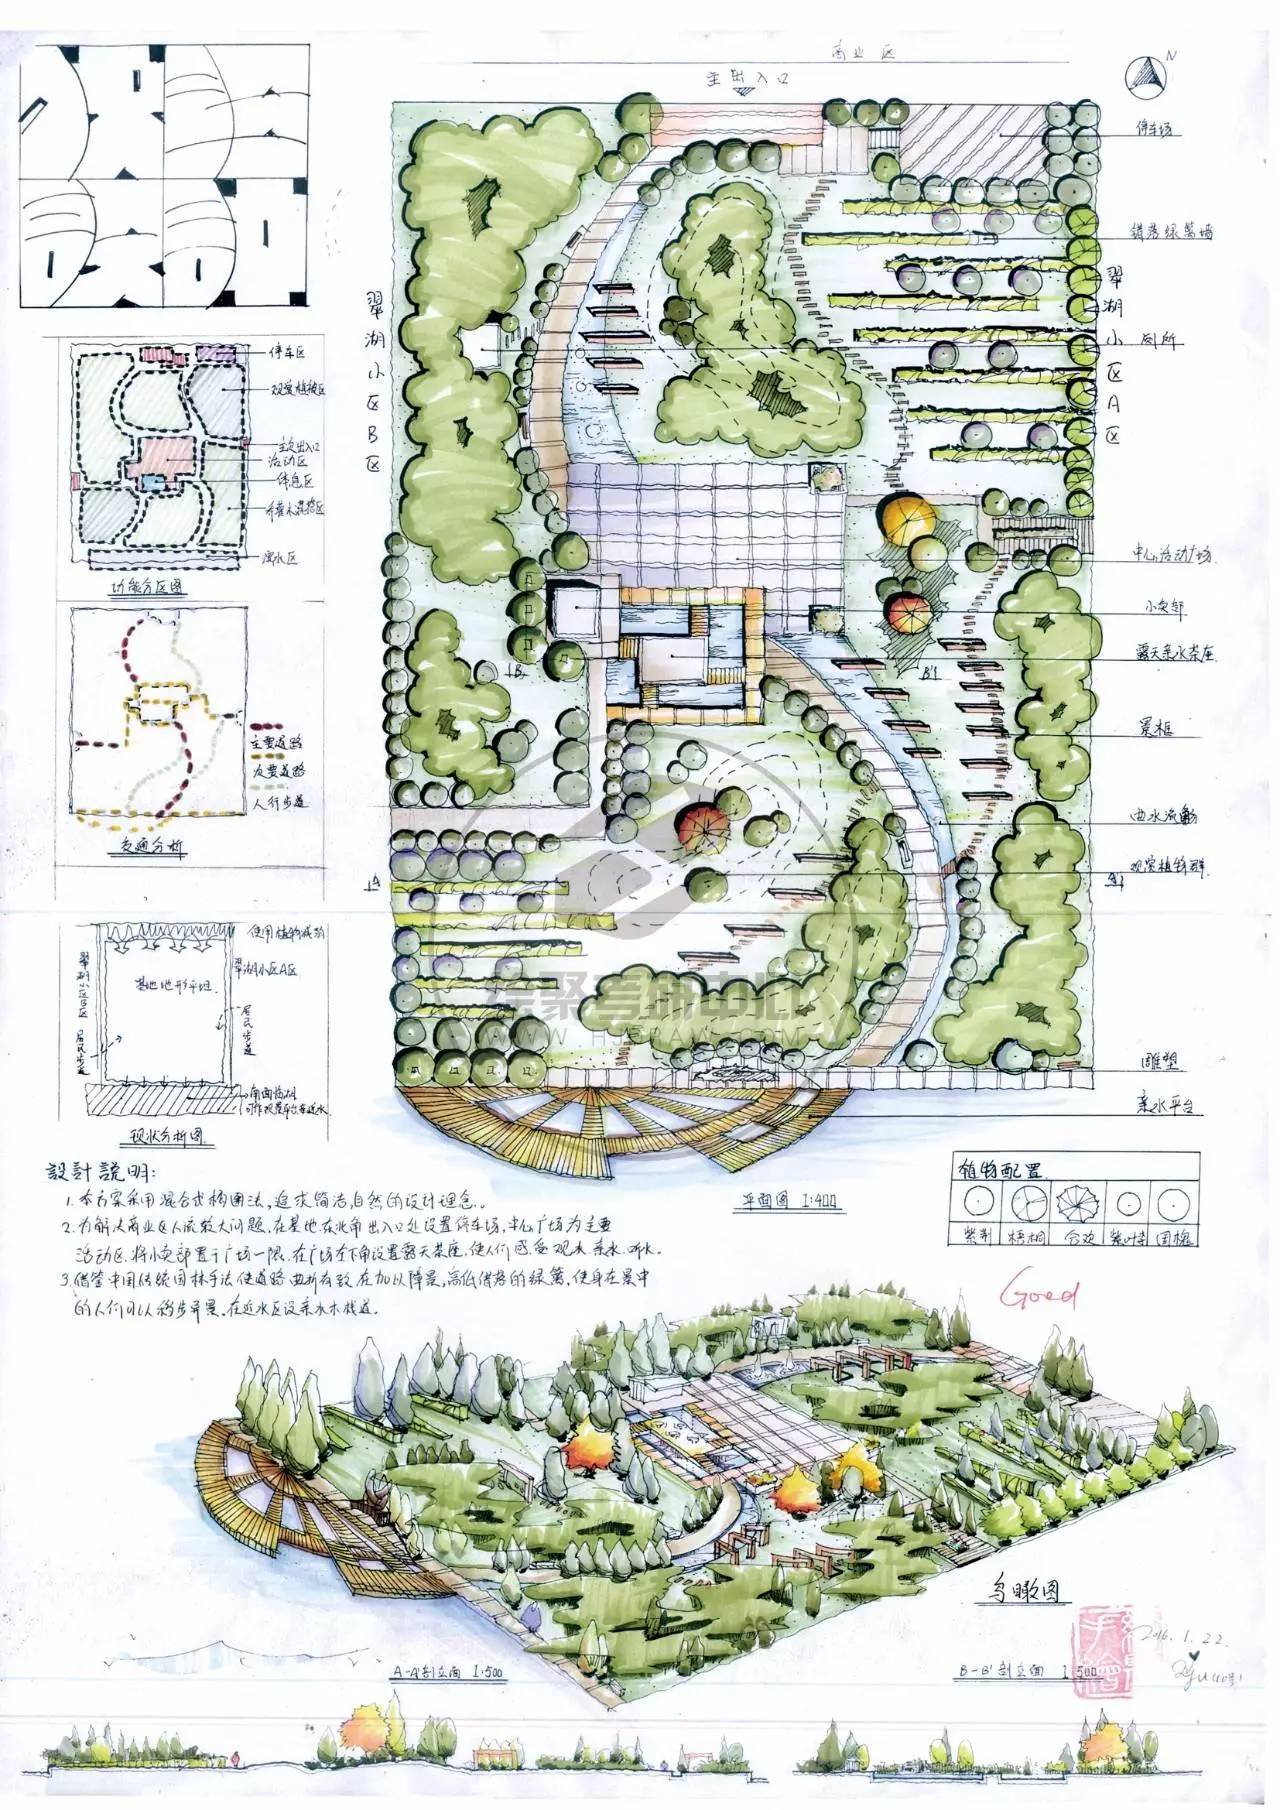 参考案例大型绿地快题设计要点(1)空间设计综合性公园是为人们提供